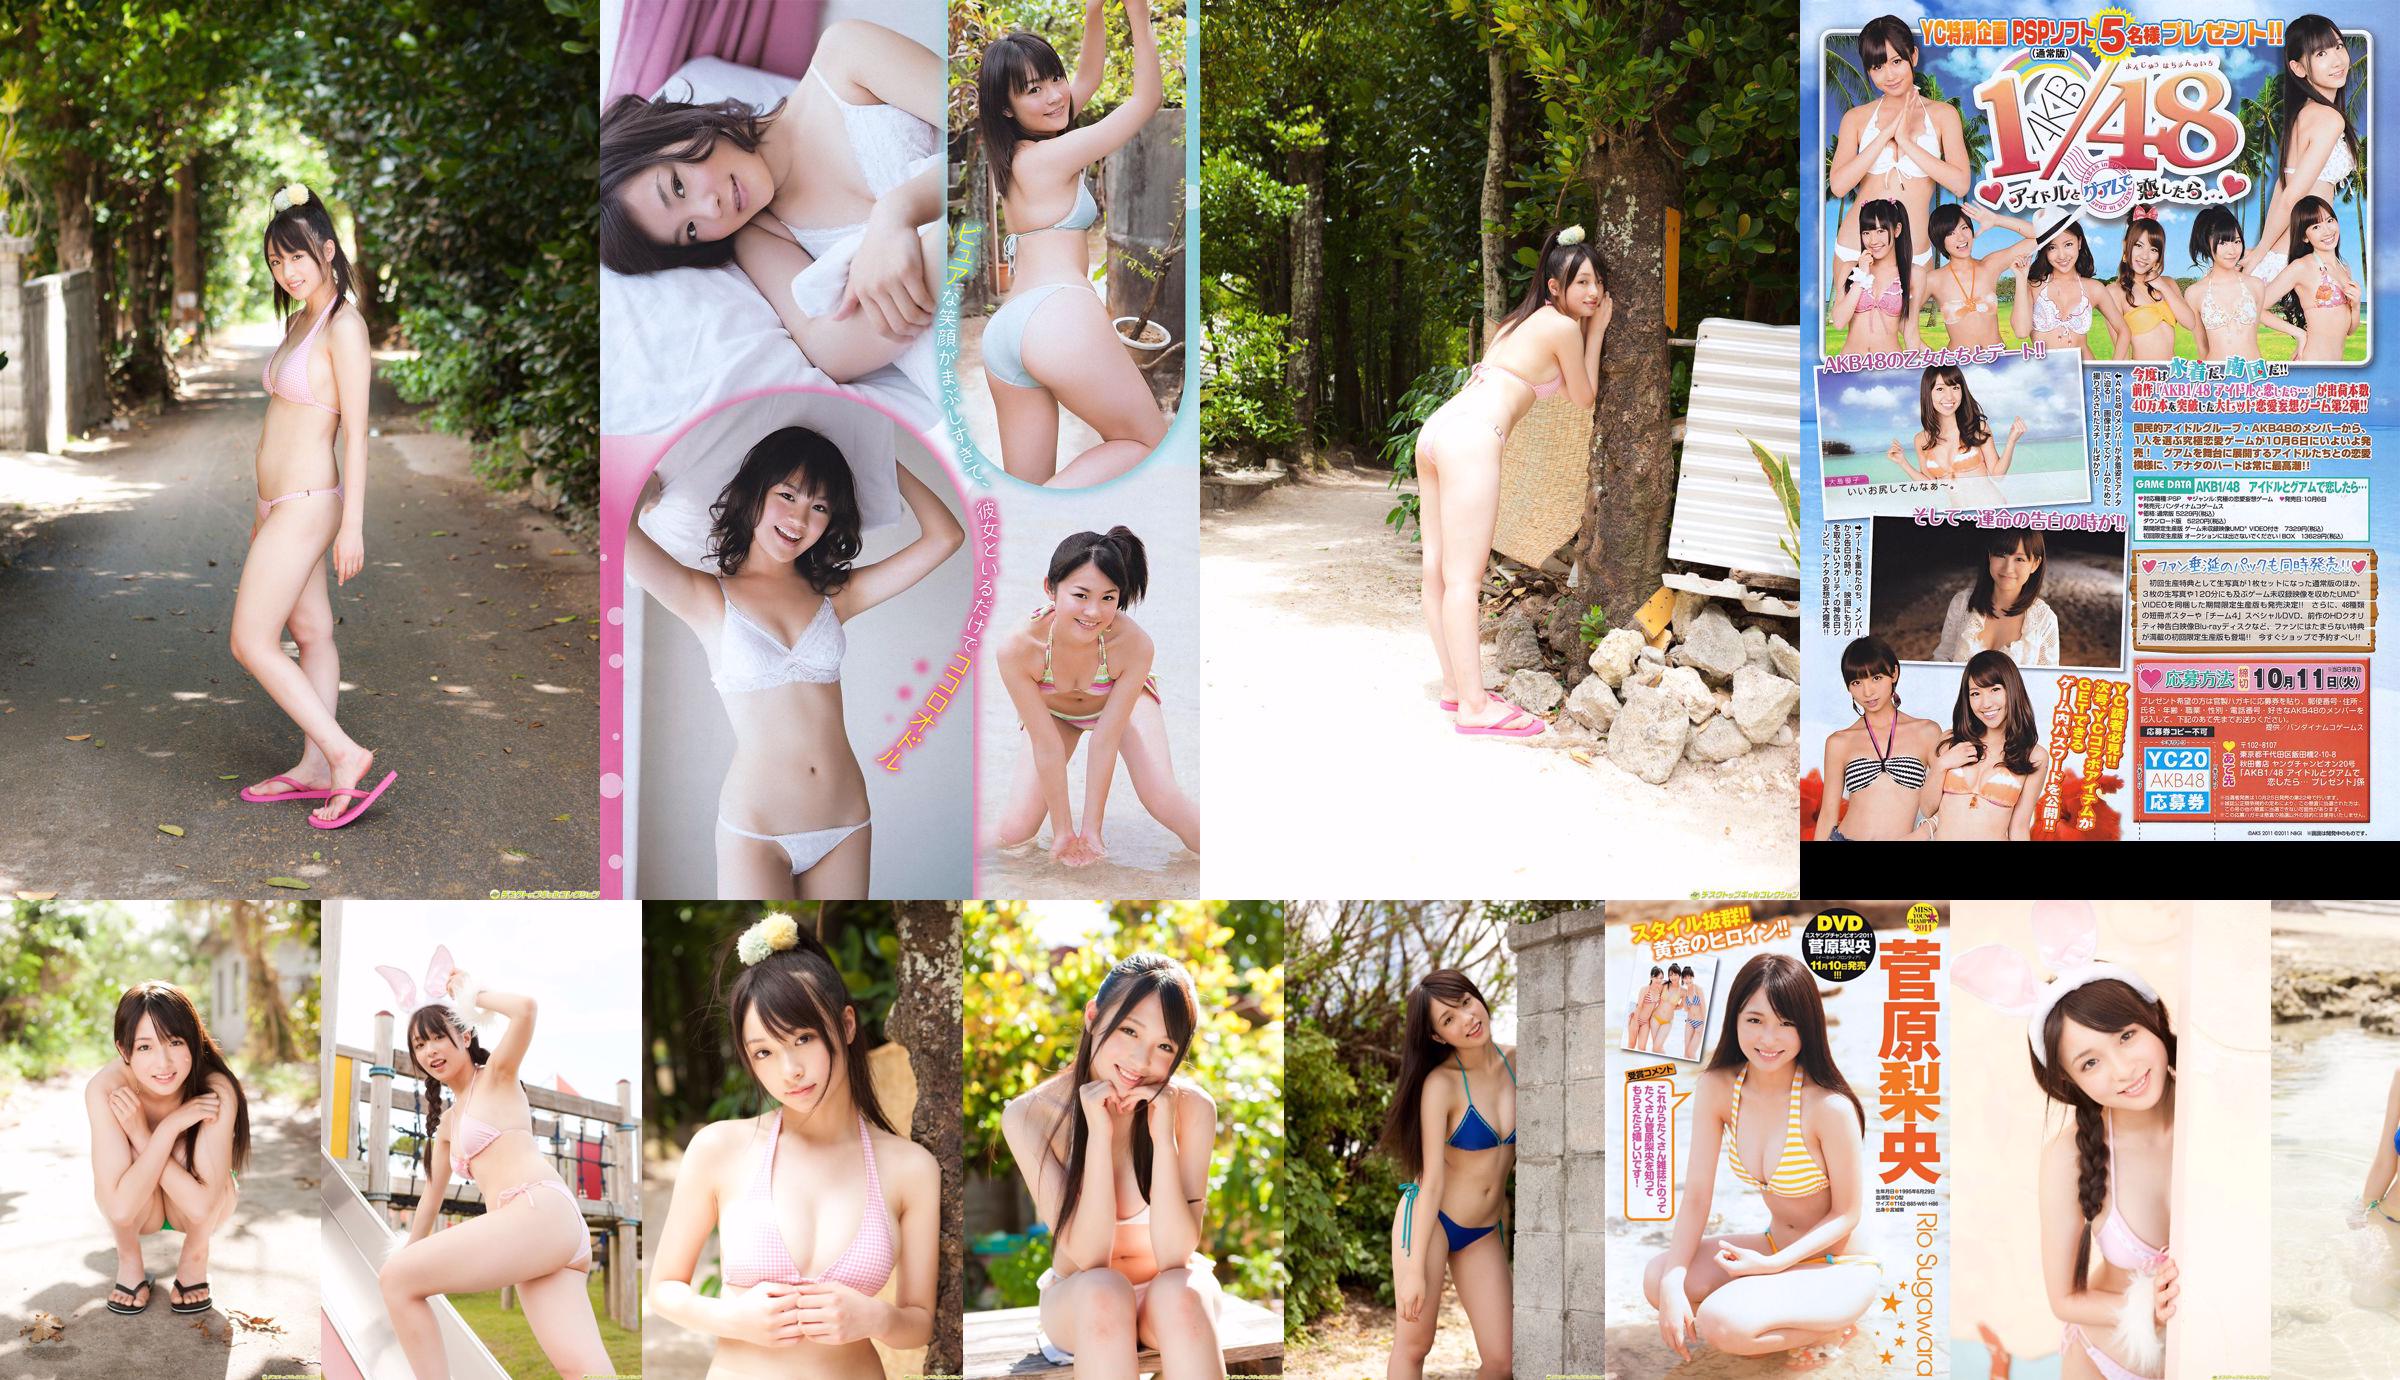 [Joven Campeona] Sugawara Risa, Horikawa Mikako, Matsushima no o la revista fotográfica No. 20 de 2011 No.4f8c43 Página 1